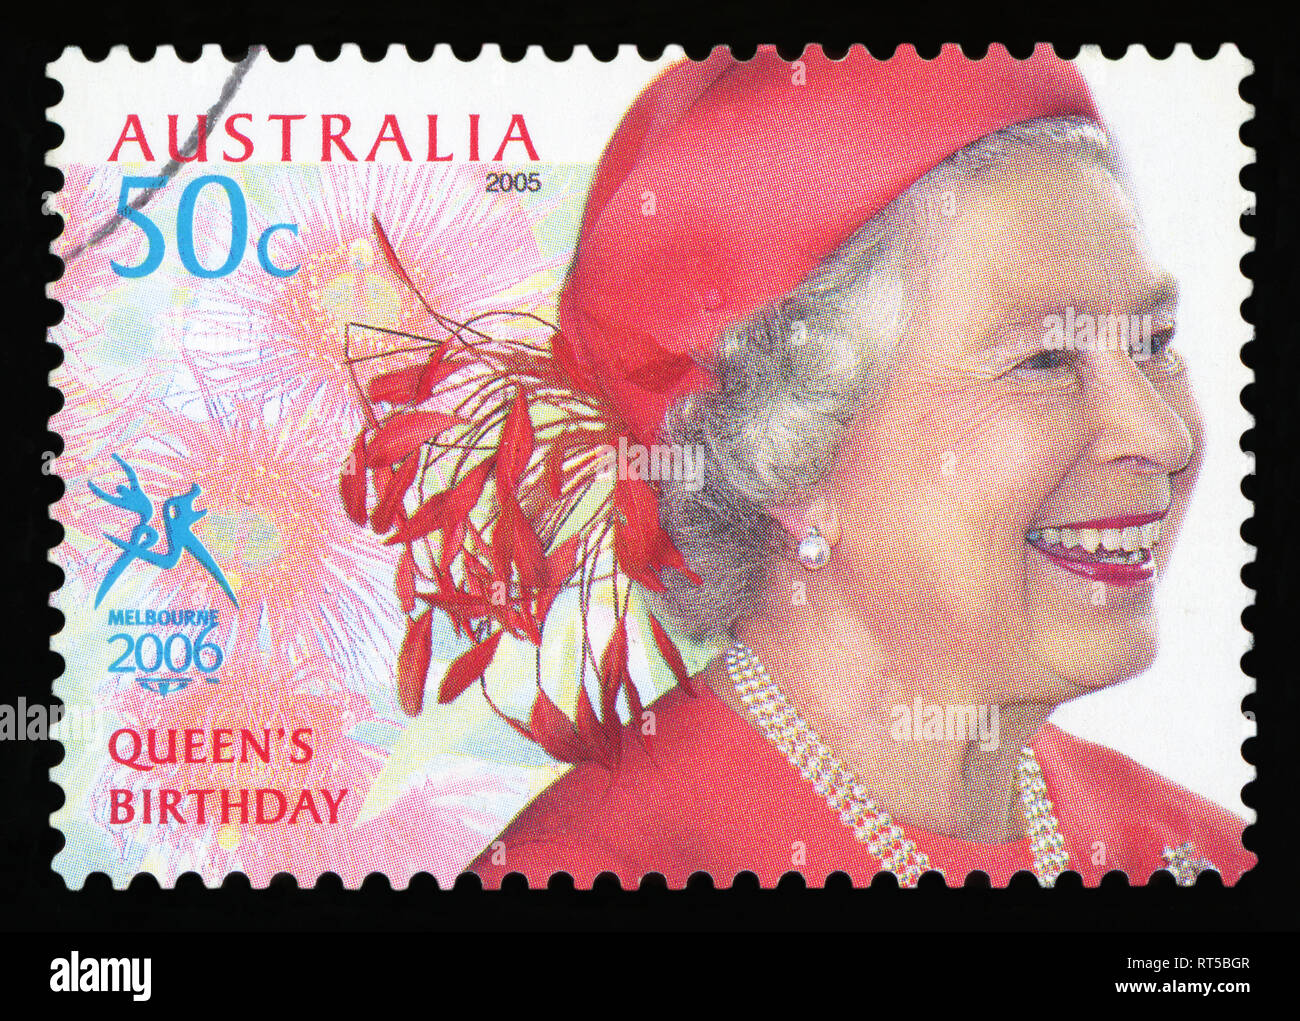 L'AUSTRALIE - circa 2005 : timbres en Australie, montre la reine Elizabeth II (Royaume-Uni, France, Angleterre), vers 2005 Banque D'Images